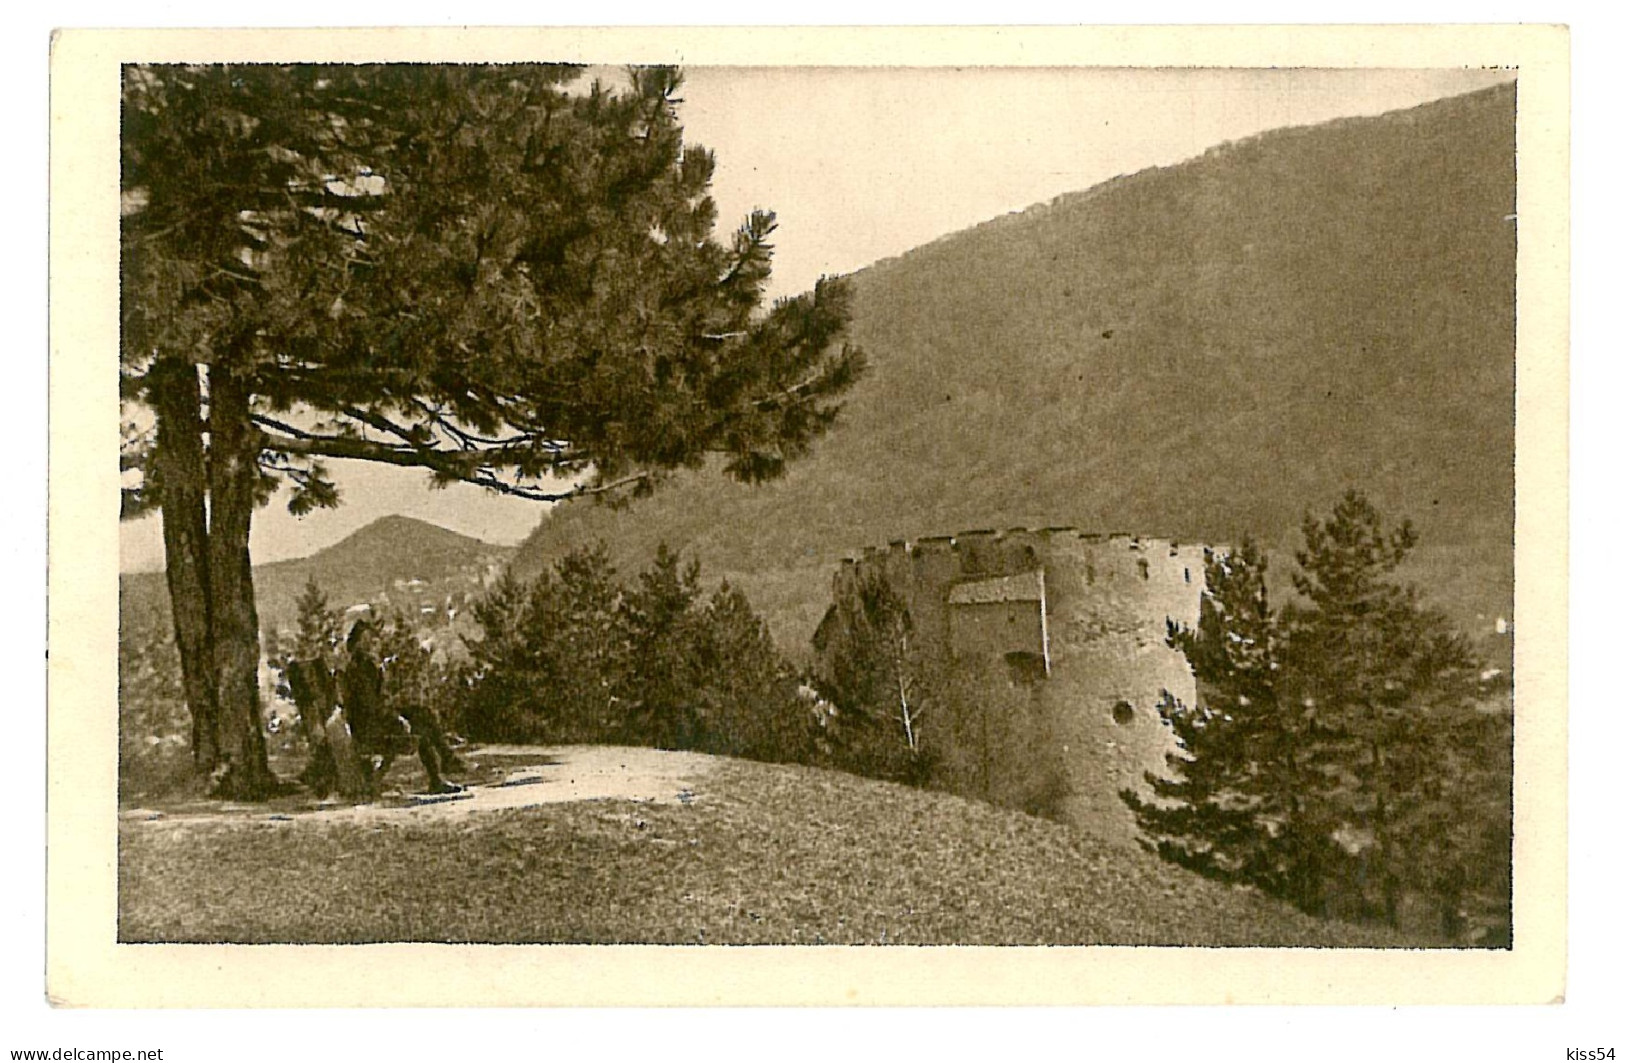 RO 54 - 4345 BRASOV, Romania - Old Postcard - Unused - Roumanie